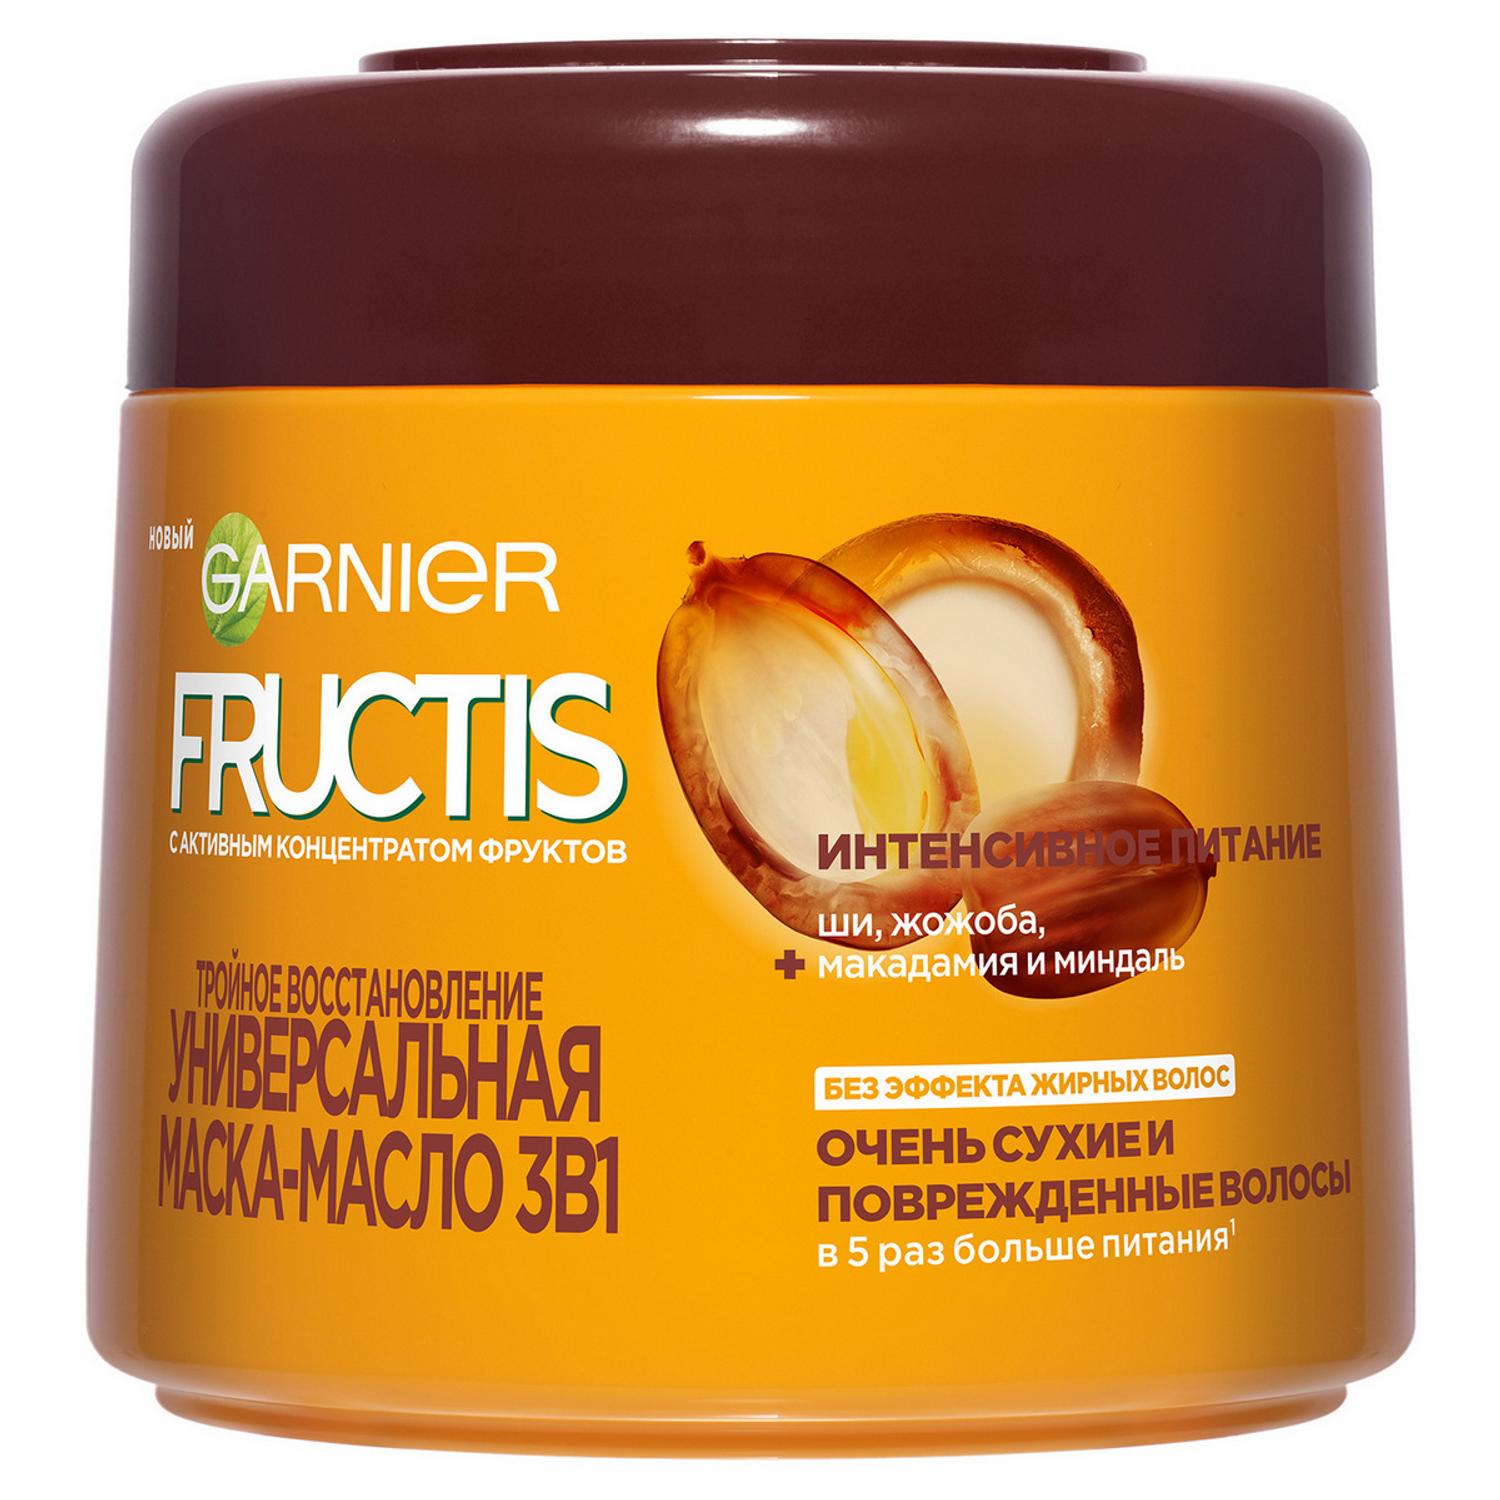 Маска-масло для волос Garnier Fructis Тройное восстановление 300 мл цена и фото